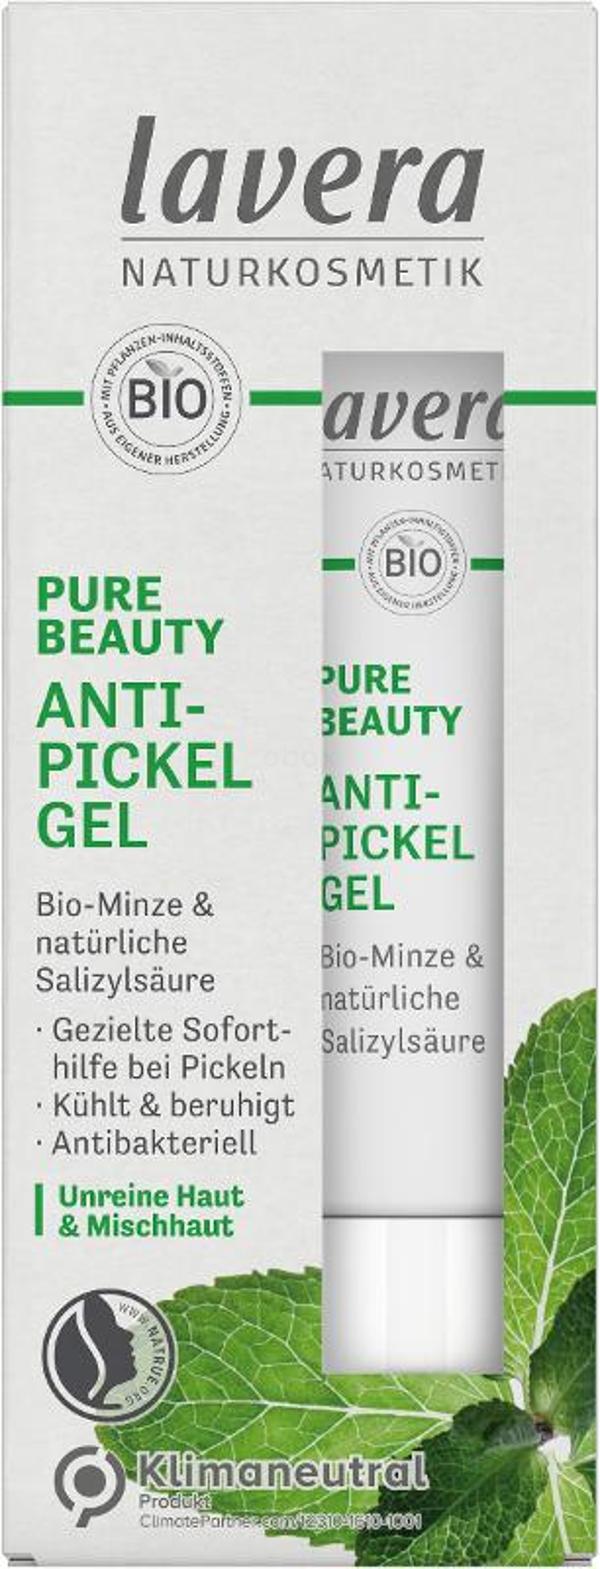 Produktfoto zu Anti-Pickel Gel Pure Beauty